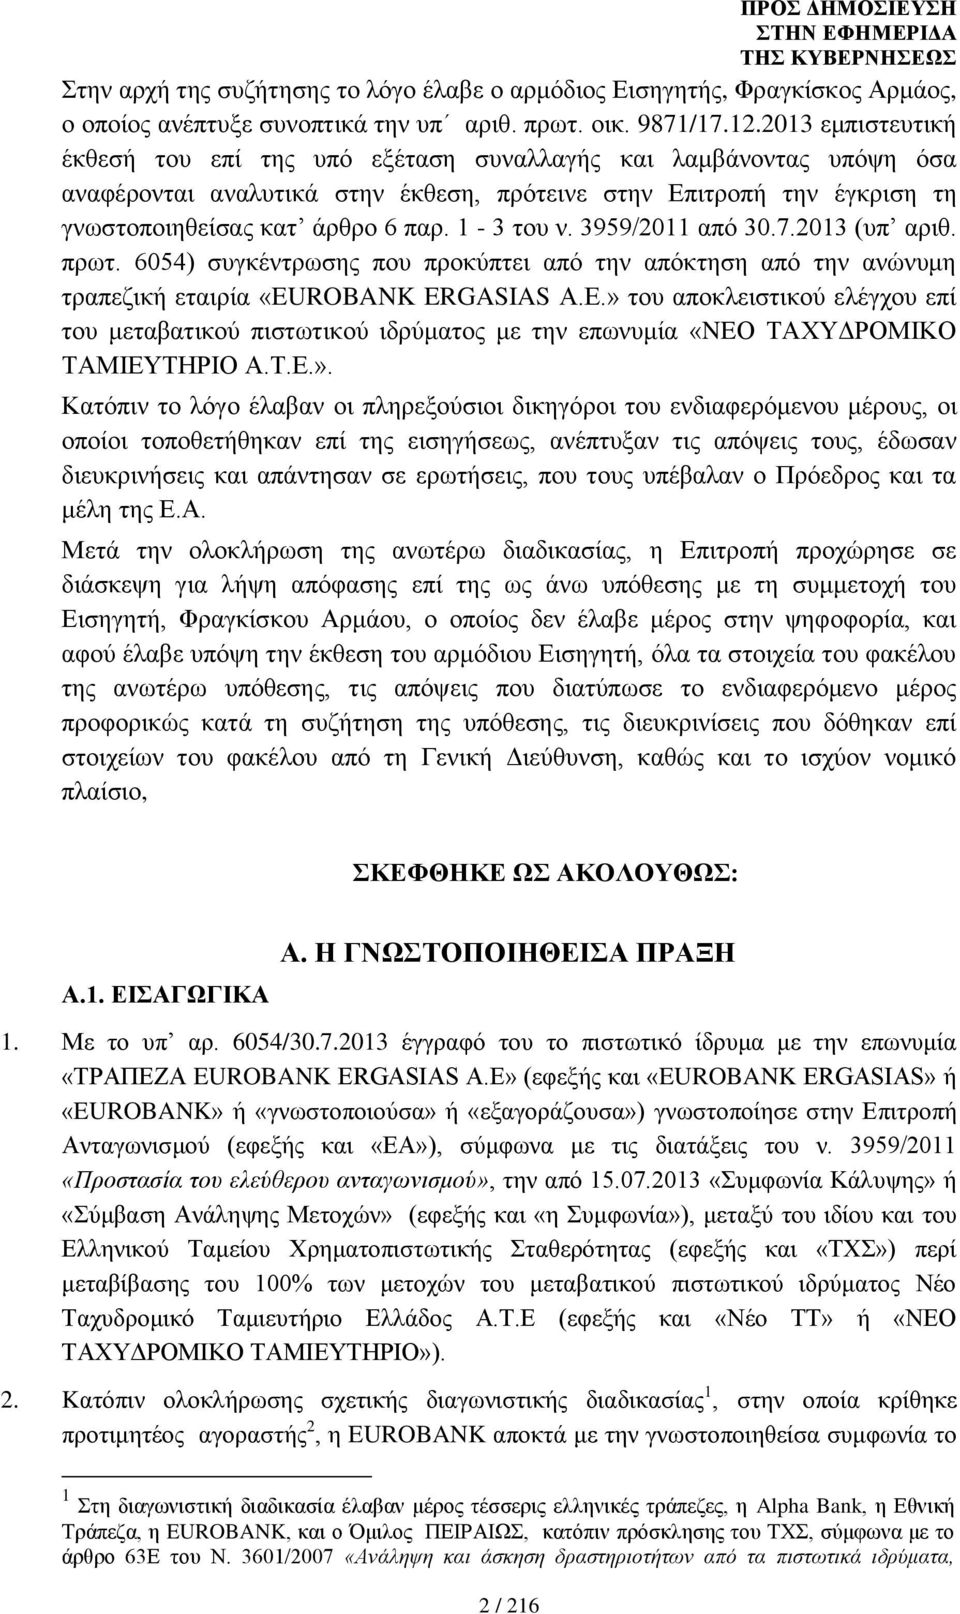 1-3 του ν. 3959/2011 από 30.7.2013 (υπ αριθ. πρωτ. 6054) συγκέντρωσης που προκύπτει από την απόκτηση από την ανώνυμη τραπεζική εταιρία «EUROBANK ERGASIAS Α.Ε.